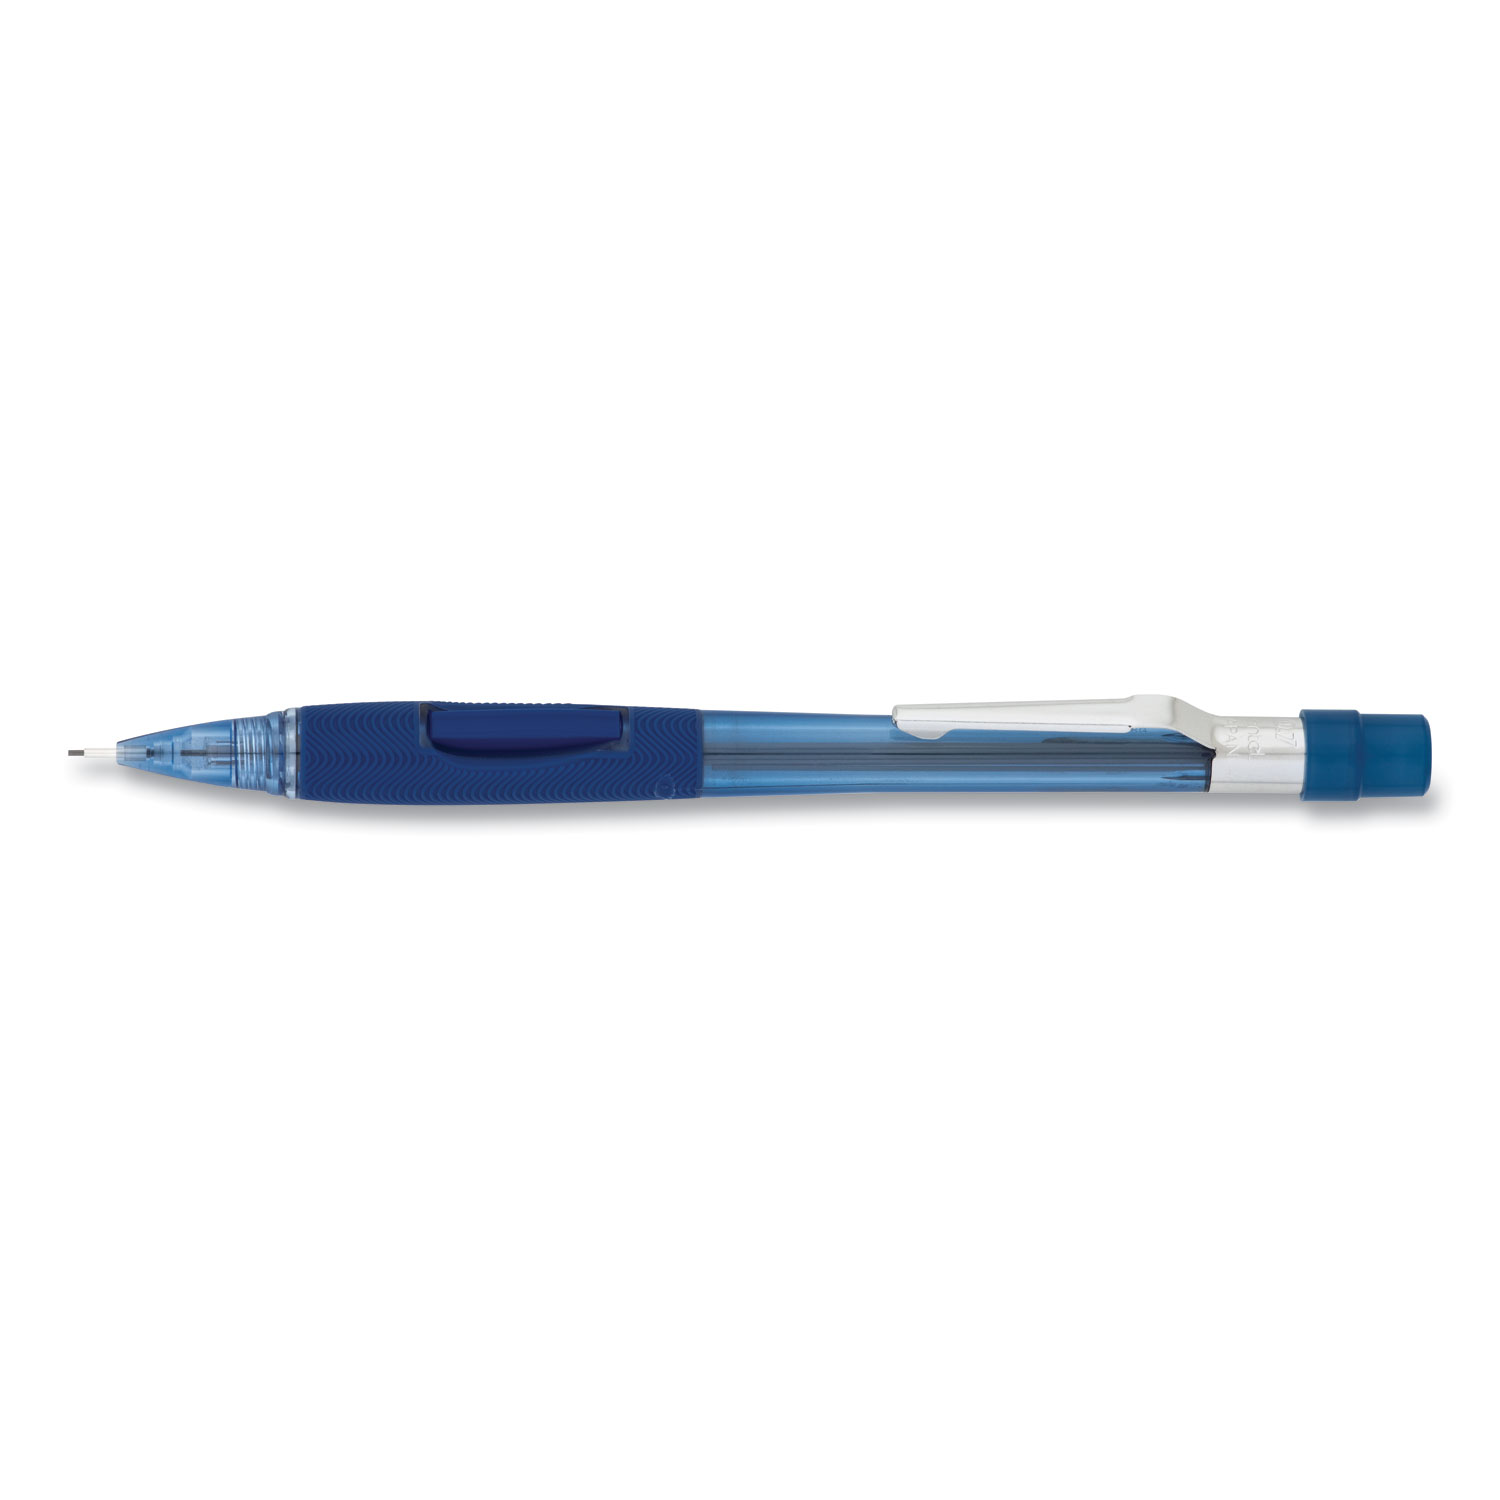  Pentel PD347TC Quicker Clicker Mechanical Pencil, 0.7 mm, HB (#2.5), Black Lead, Transparent Blue Barrel (PENPD347TC) 